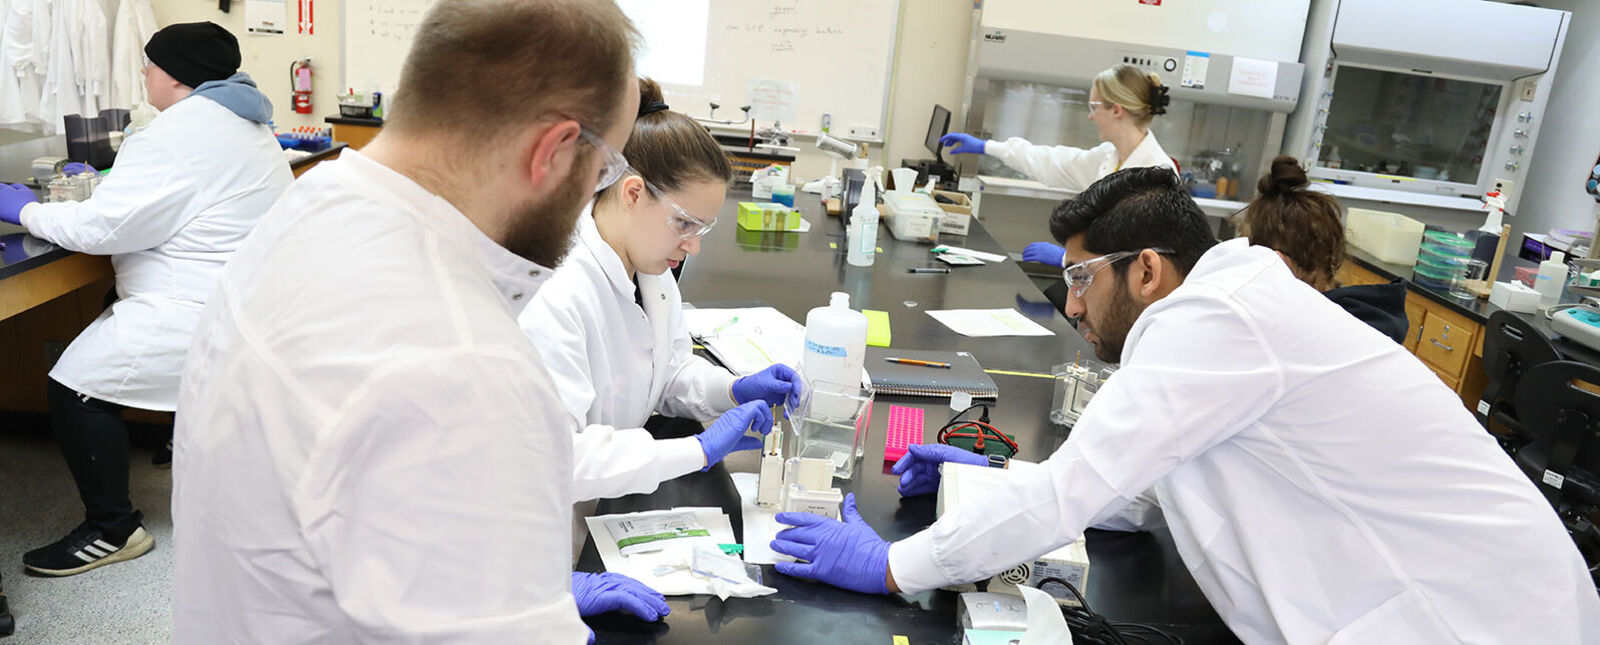 一群学生在实验室工作